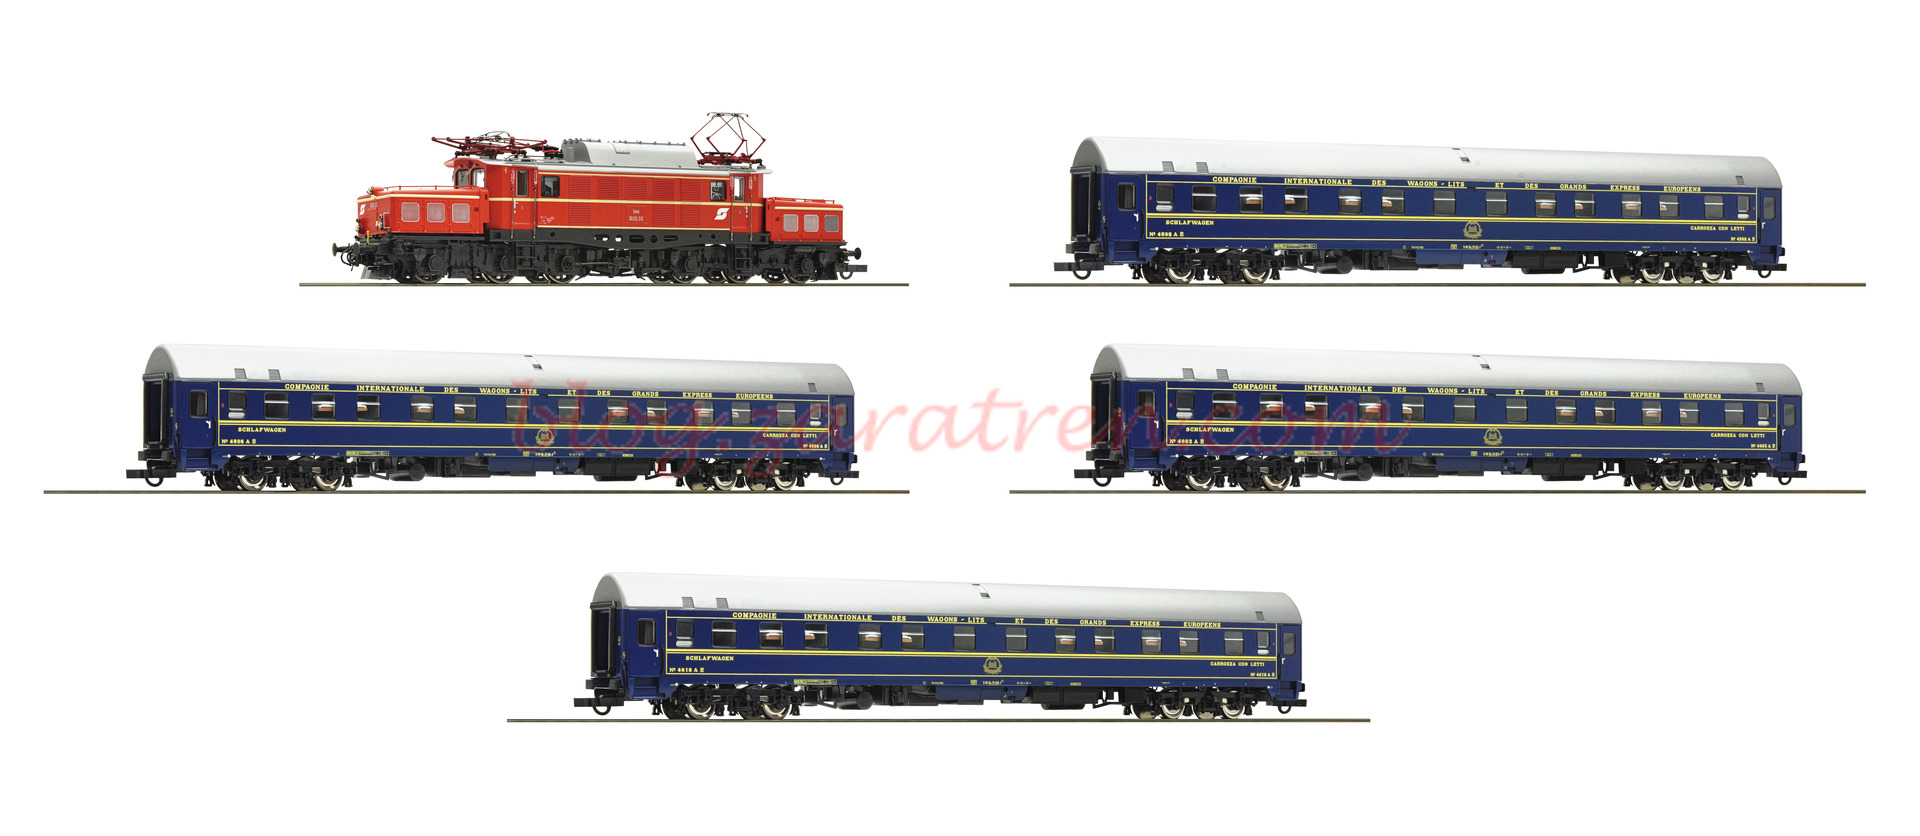 Roco – Composición OBB, Locomotora Rh 1020 y 4 coches CIWL, Epoca IV, D. Sonido, Escala H0, Ref: 61469.